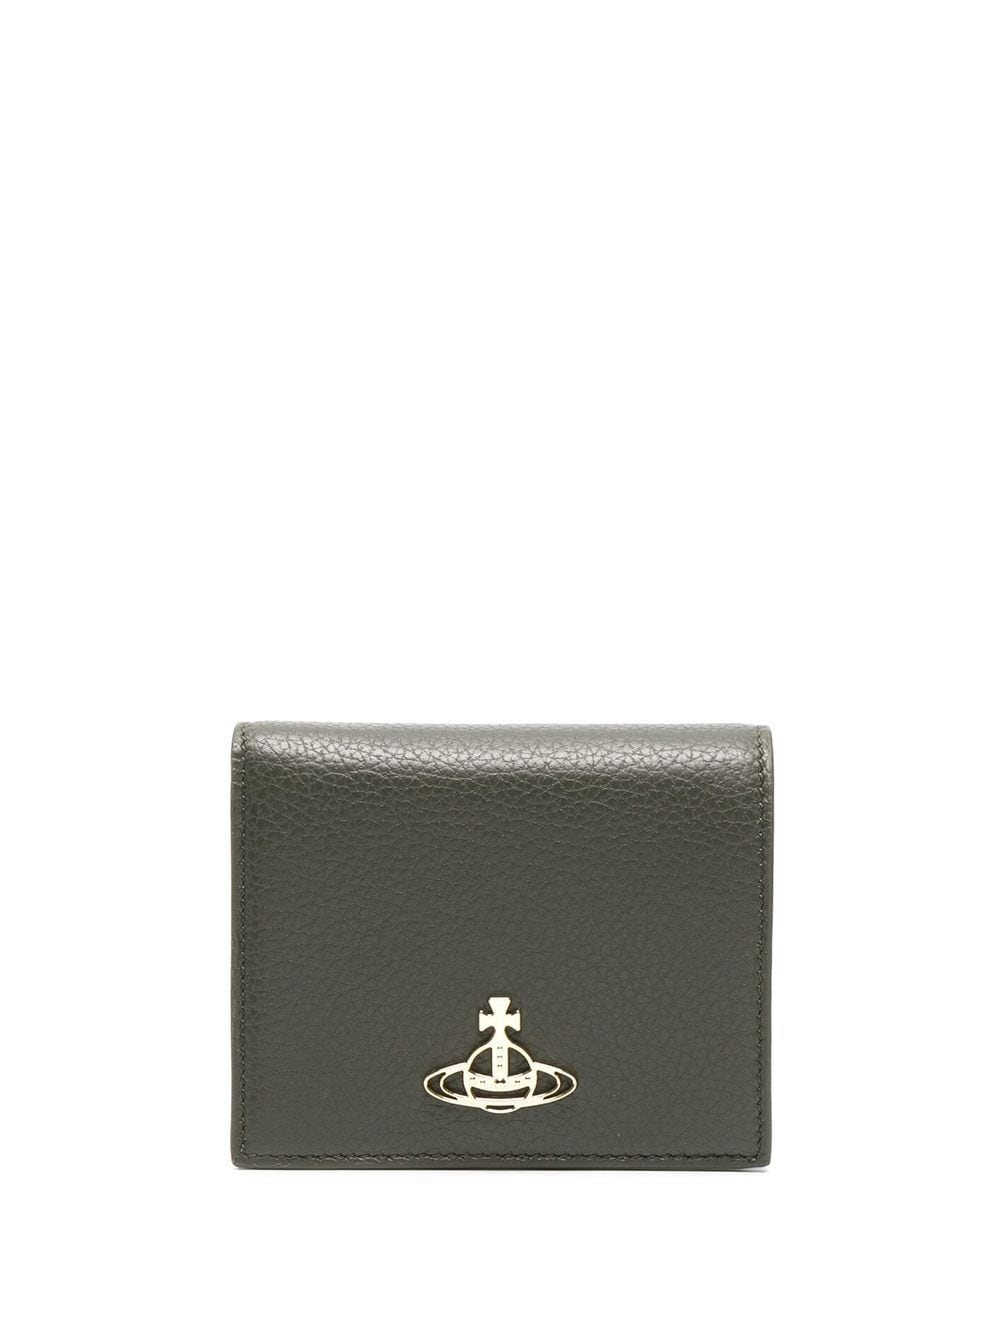 Vivienne Westwood Orb bi-fold Leather Wallet - Farfetch